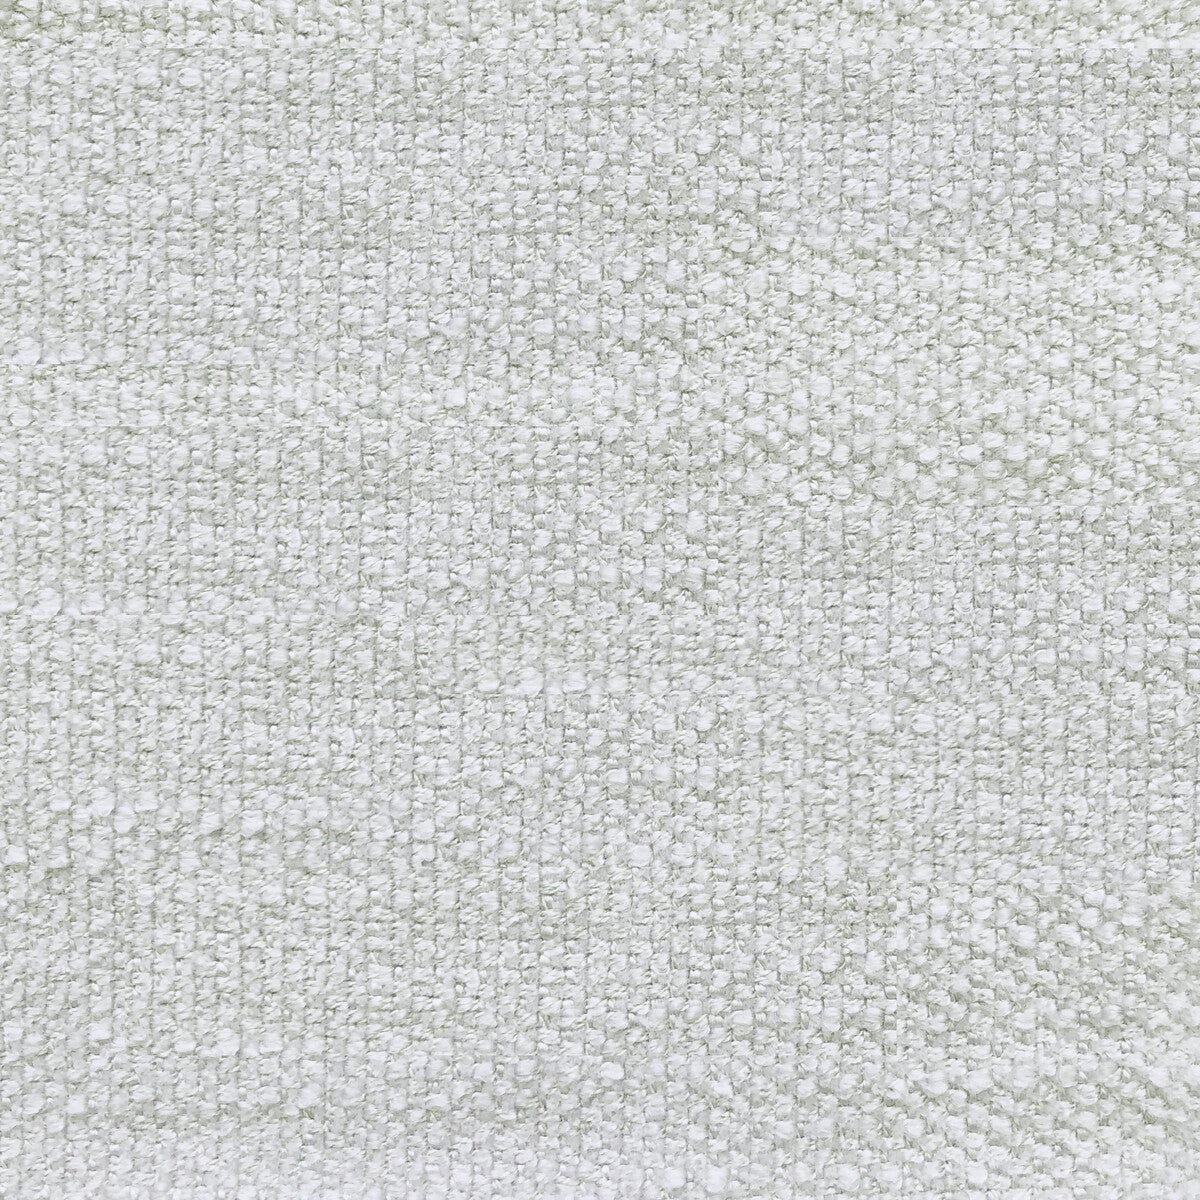 Hugo fabric in perla color - pattern LCT1053.003.0 - by Gaston y Daniela in the Lorenzo Castillo VI collection